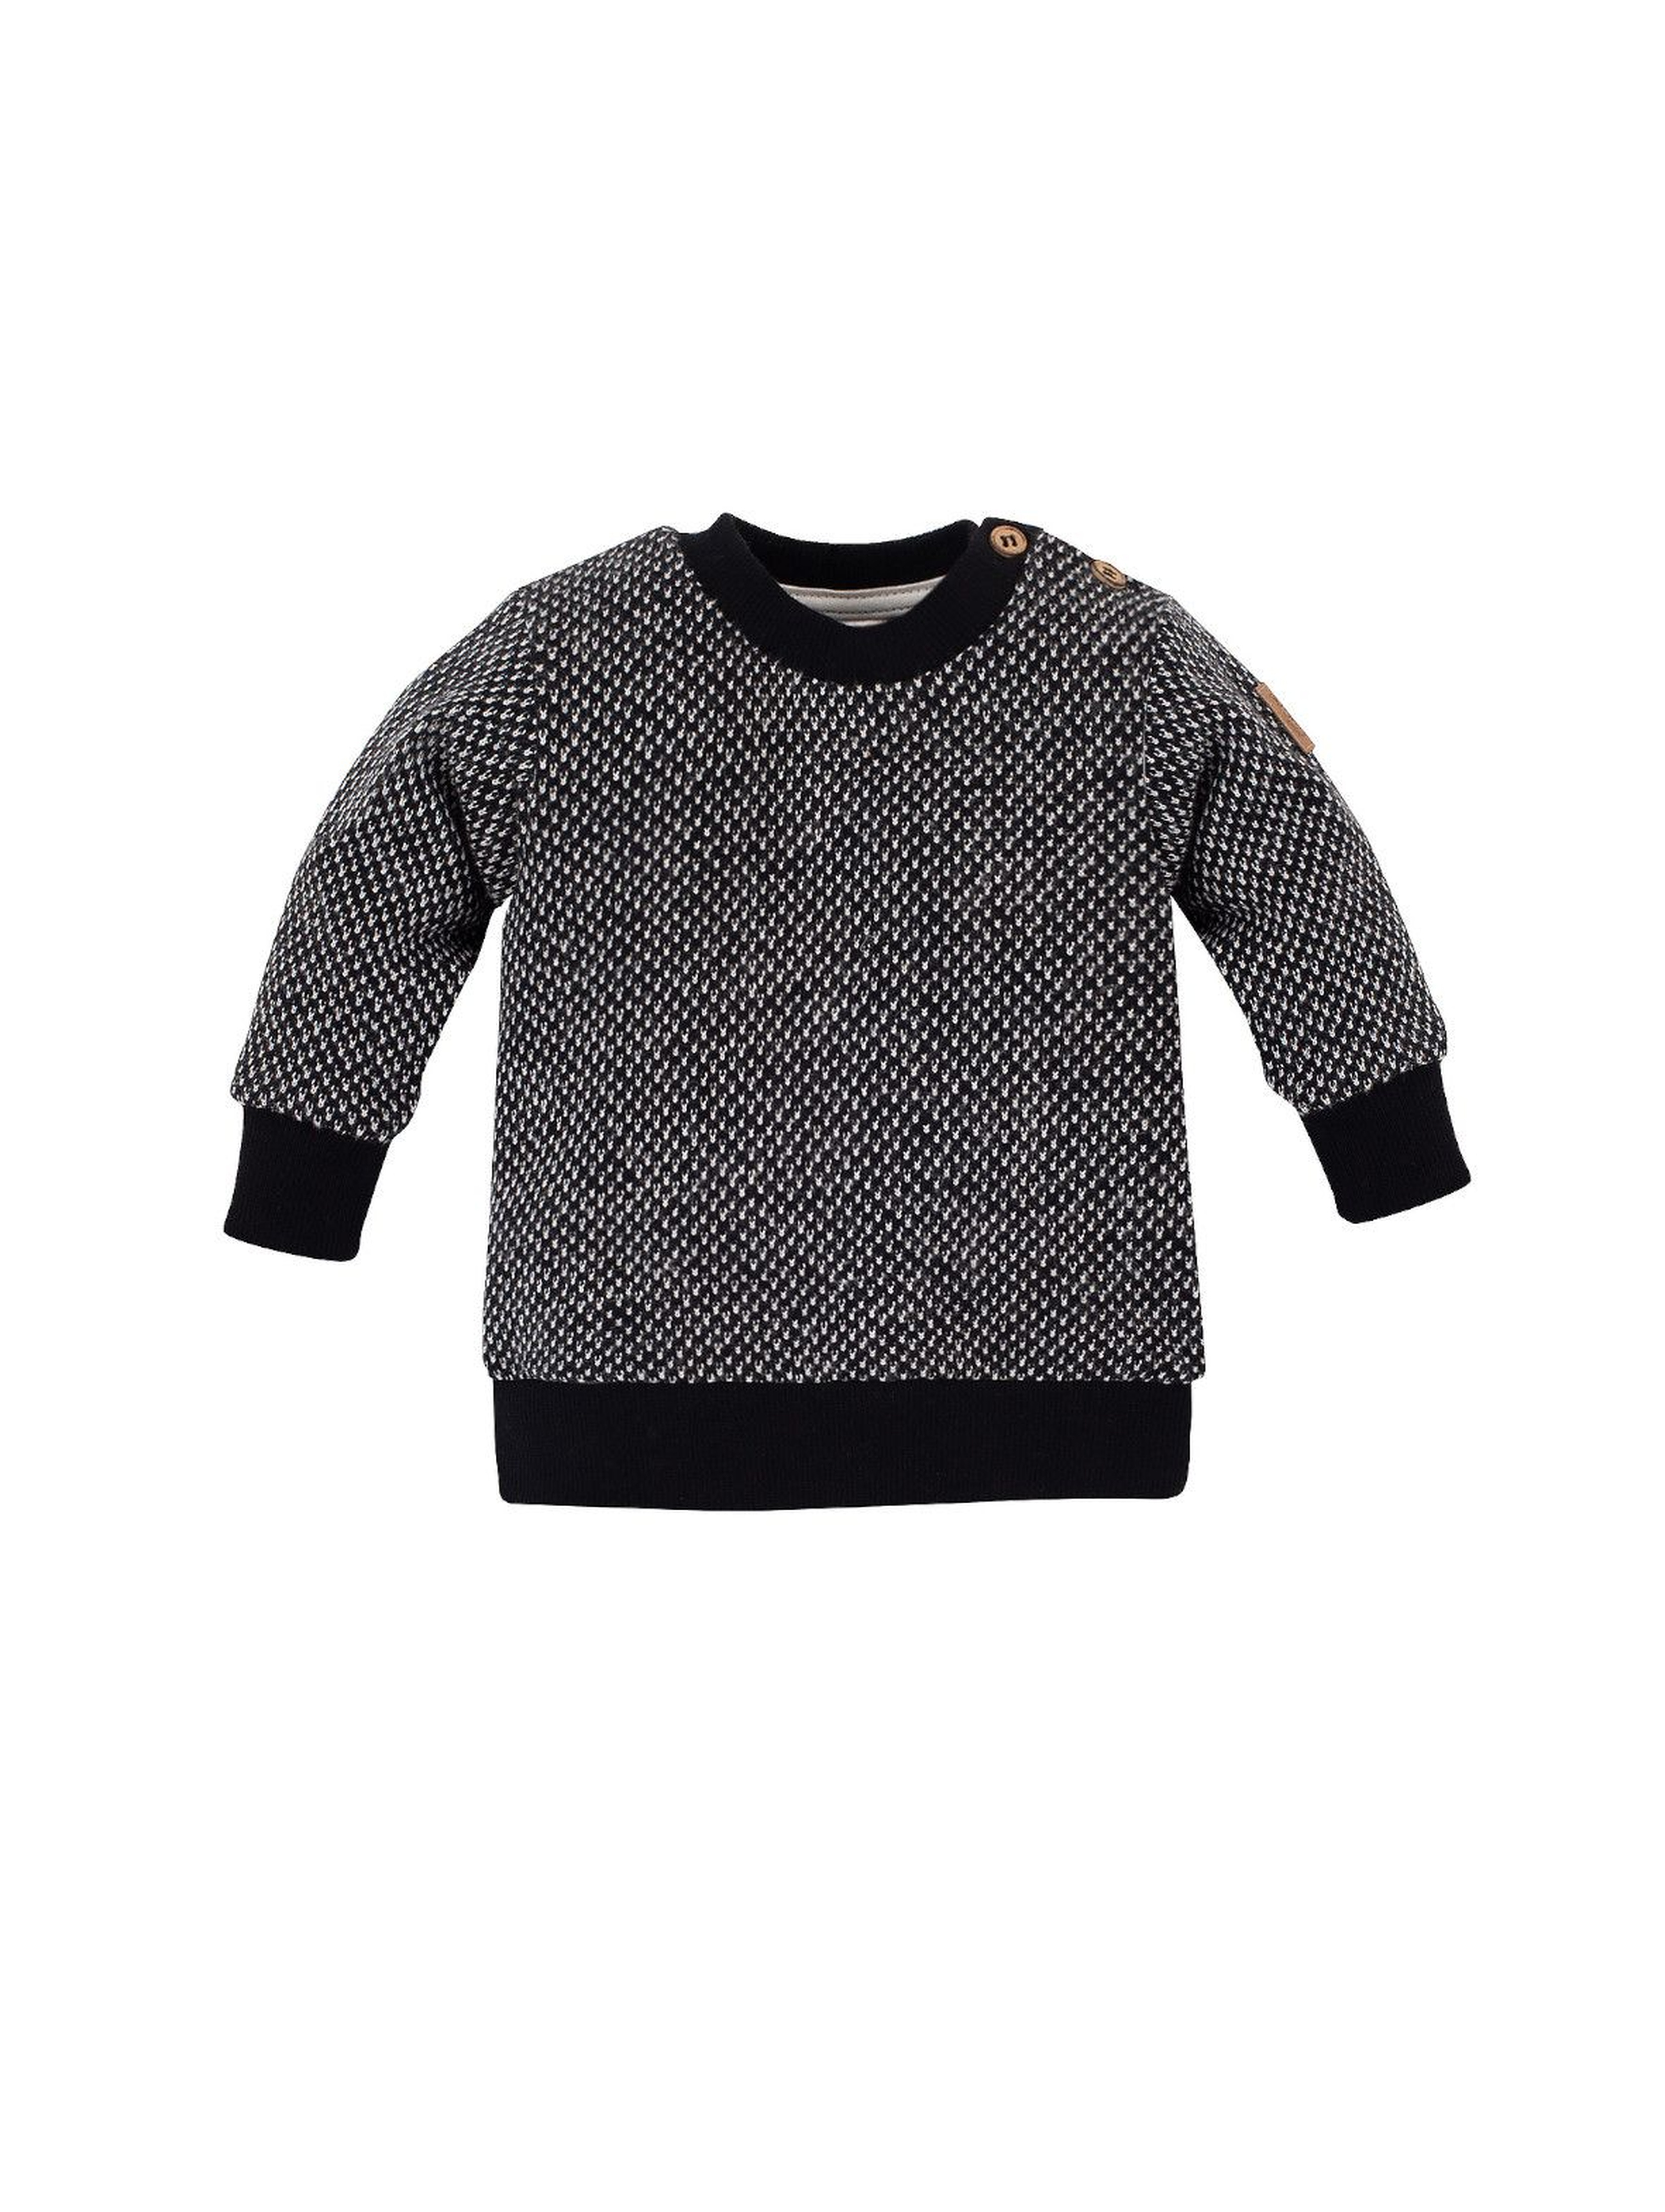 Bawełniany sweter niemowlęcy z guziczkami - czarny